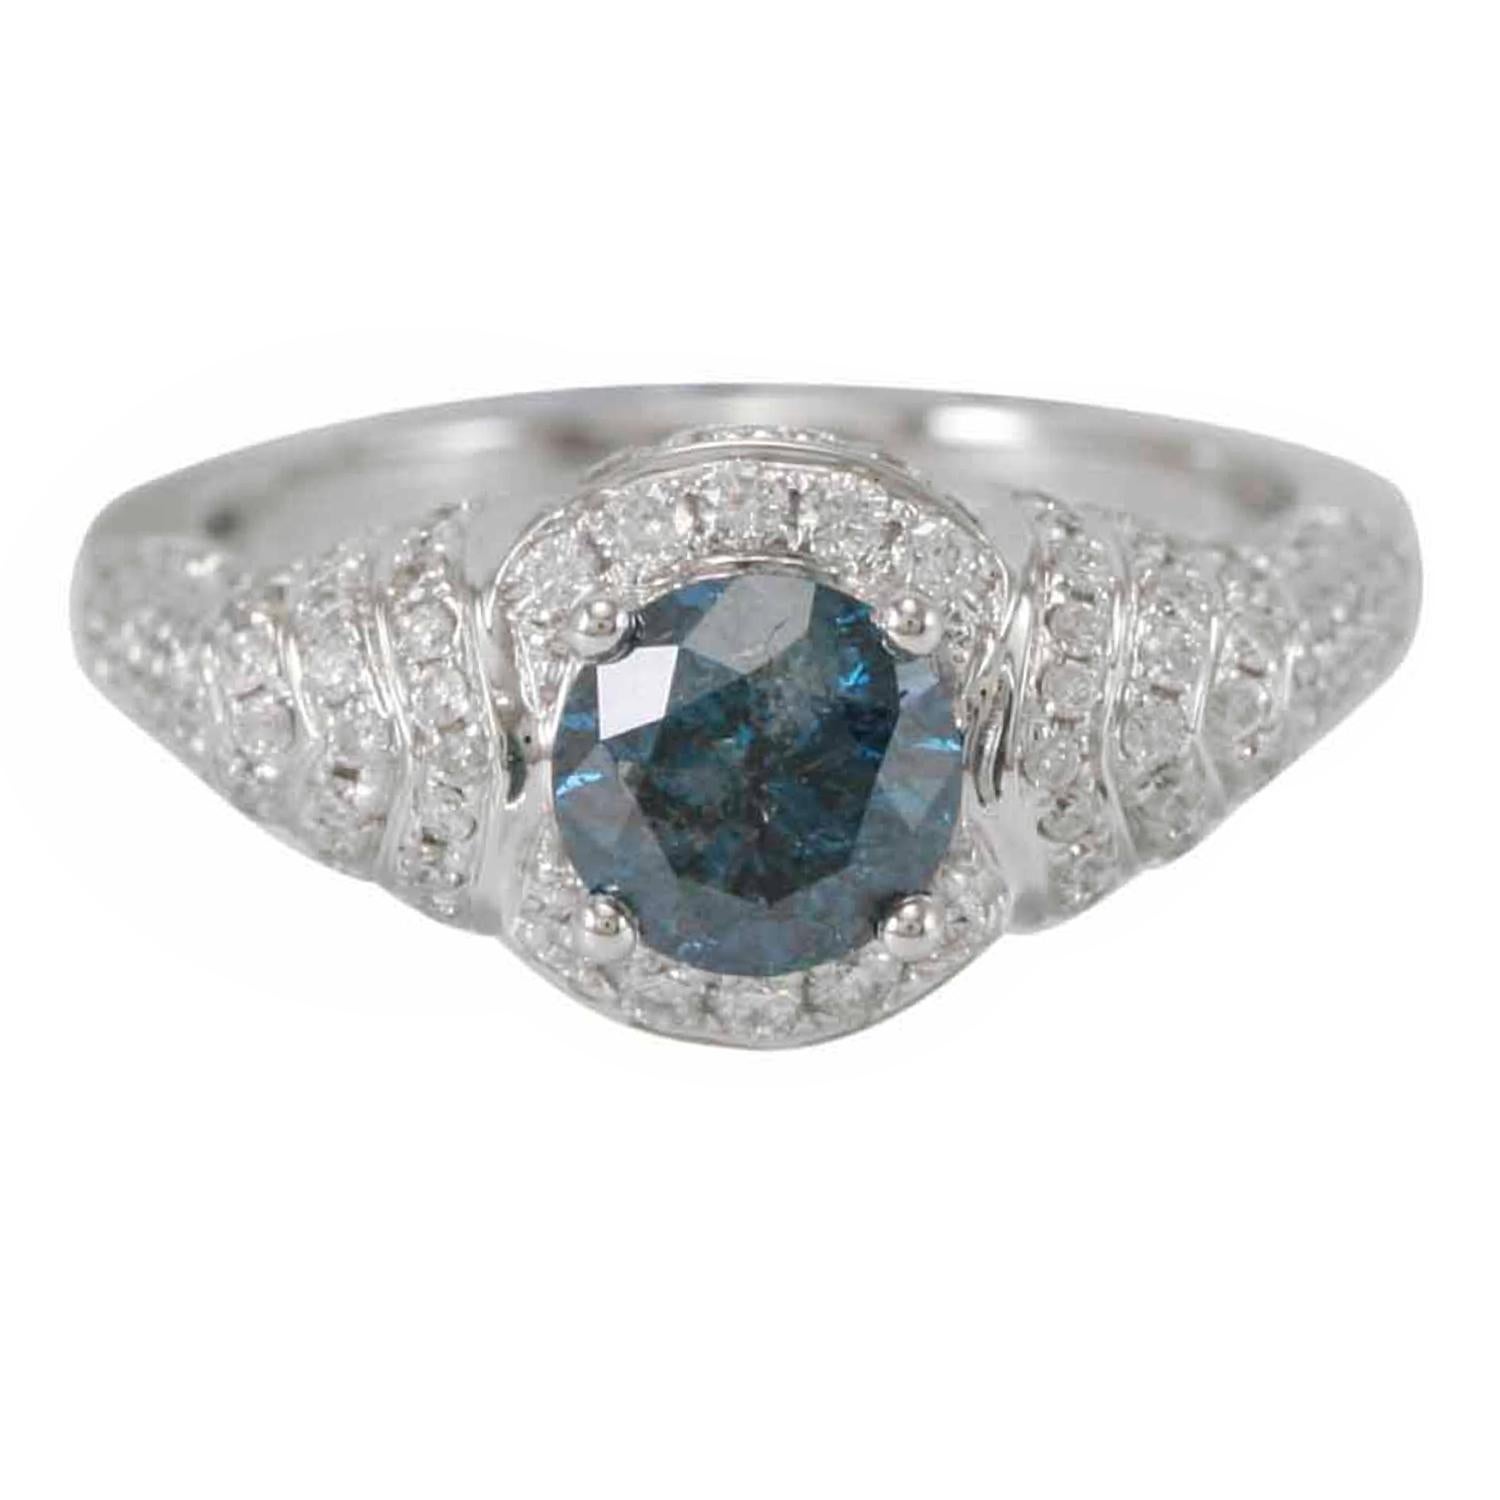 Cette superbe bague unique en son genre de la collection Suzy Levian Limited Edition présente une magnifique pierre centrale en diamant bleu de taille ronde (1,06 ct) avec un ensemble de diamants blancs (0,79 ct), sertis dans une monture en or blanc